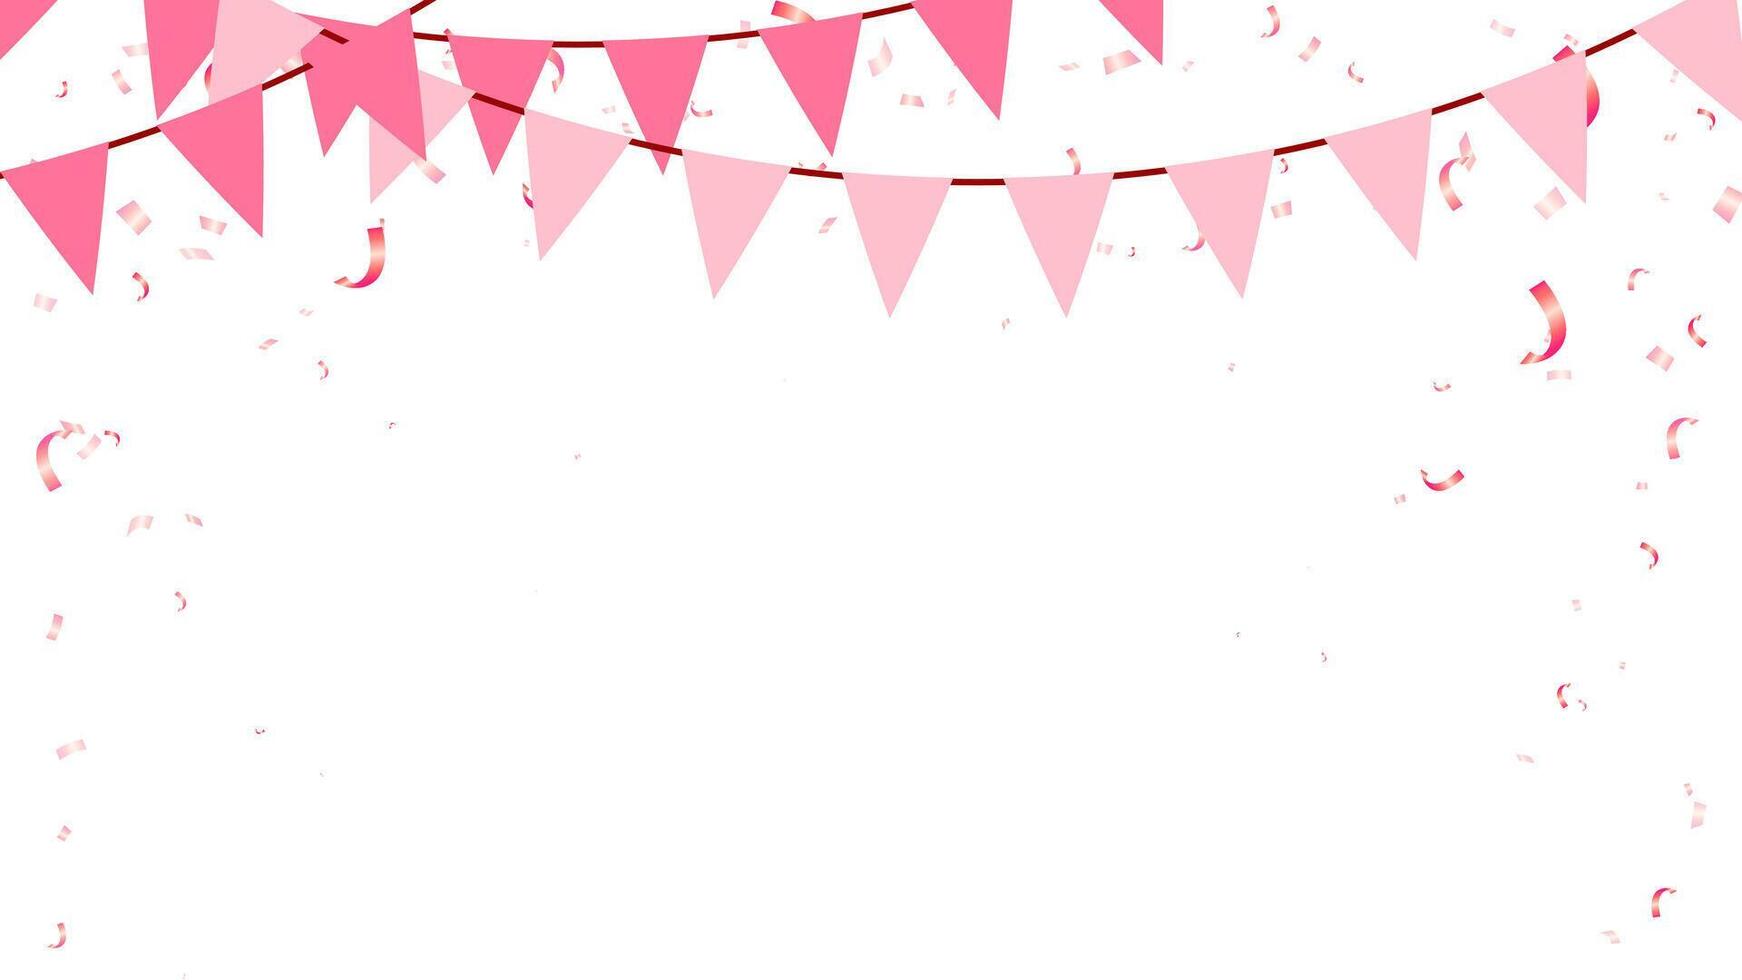 rosado color concepto con enamorado, cumpleaños, fiesta, aniversario, decoración elementos verderón papel banderas y papel picado vector